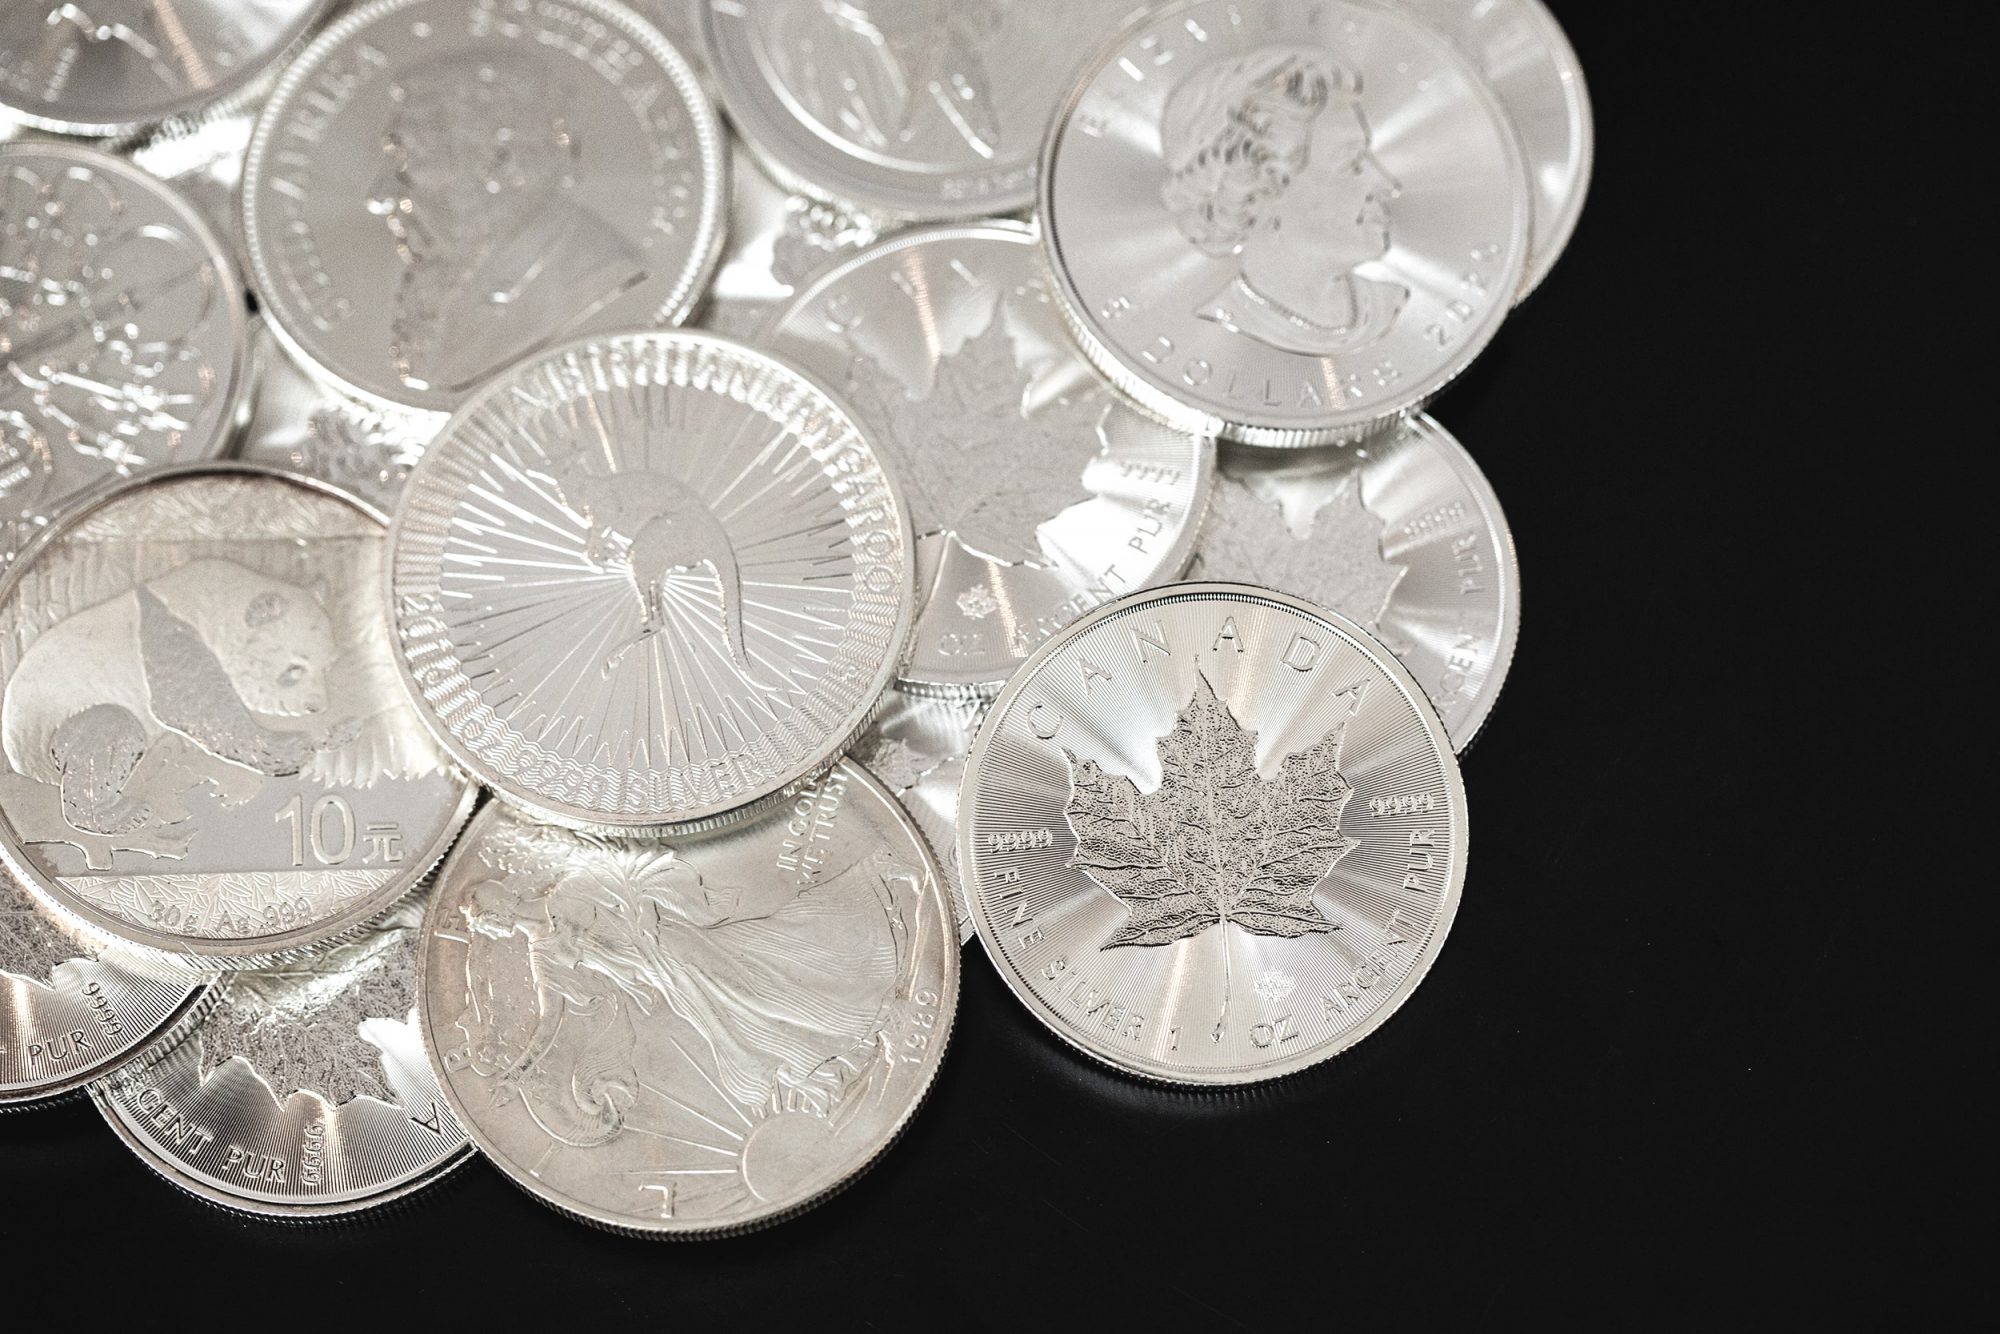 Silber kaufen als Wertanlage, in Form von Silberbarren oder Silbermünzen